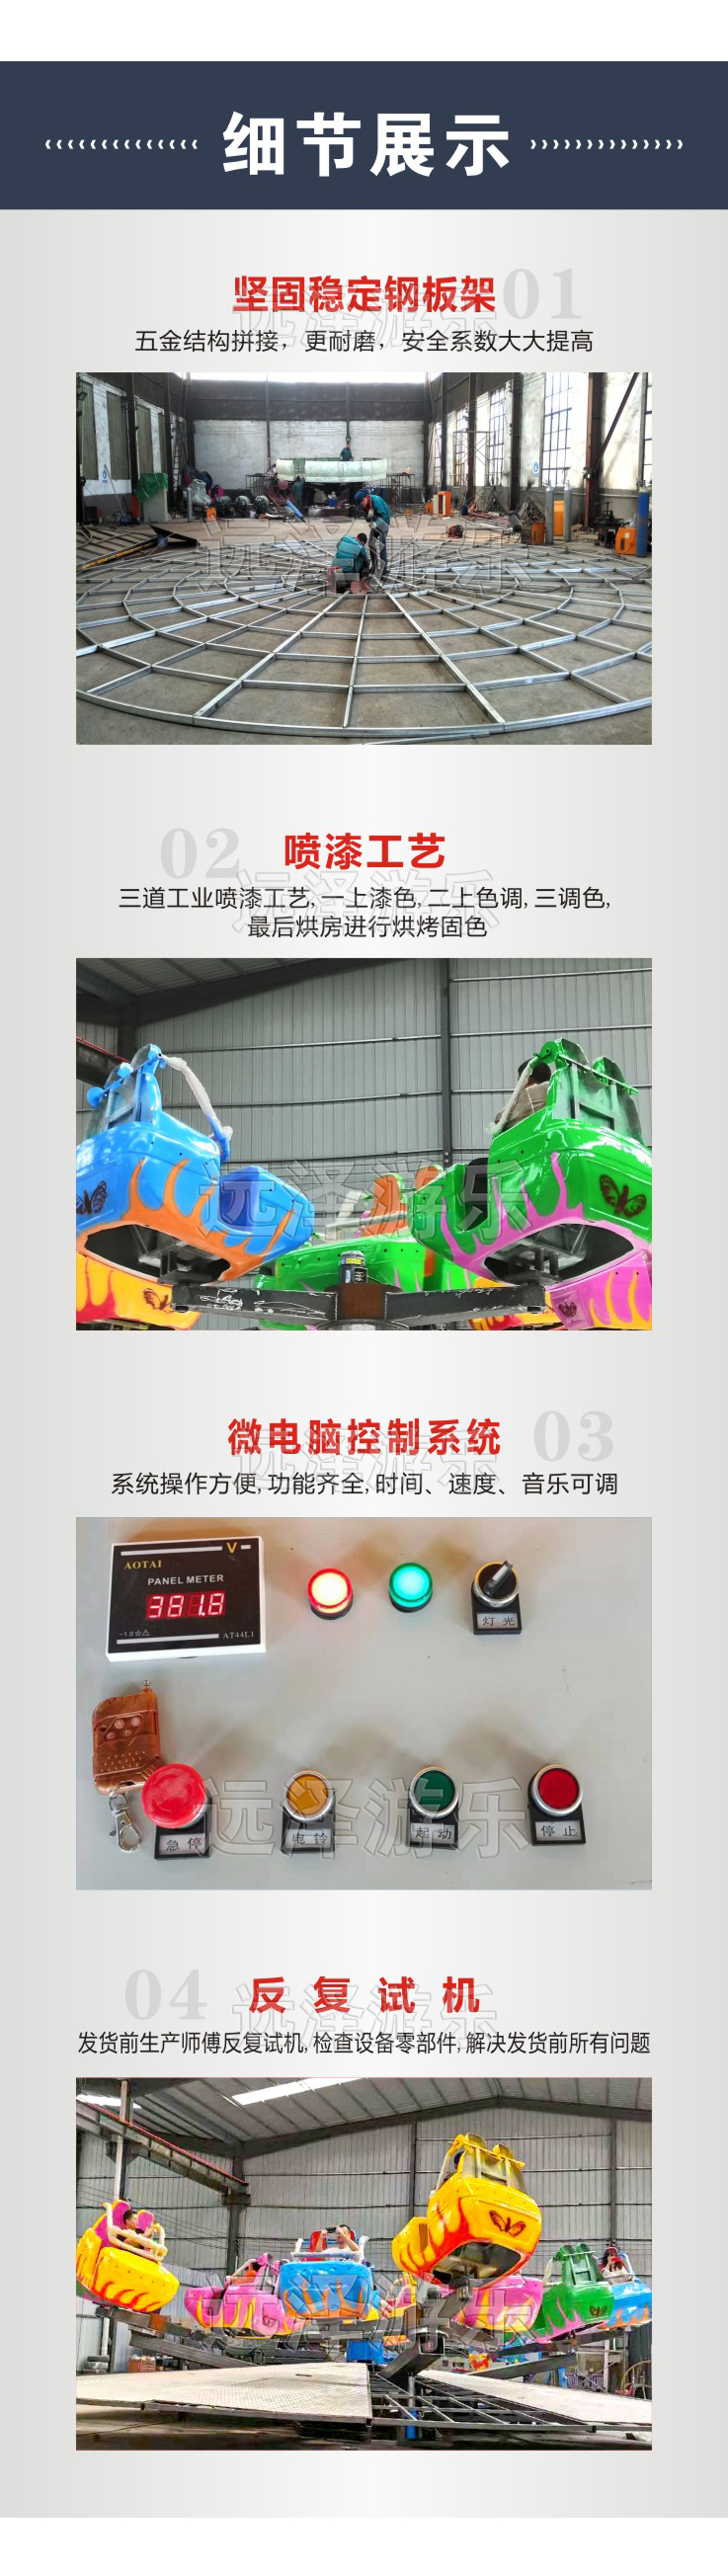 无锡炫舞飞车游乐设备 霹雳飞舞 星际探险游乐设施价格 4